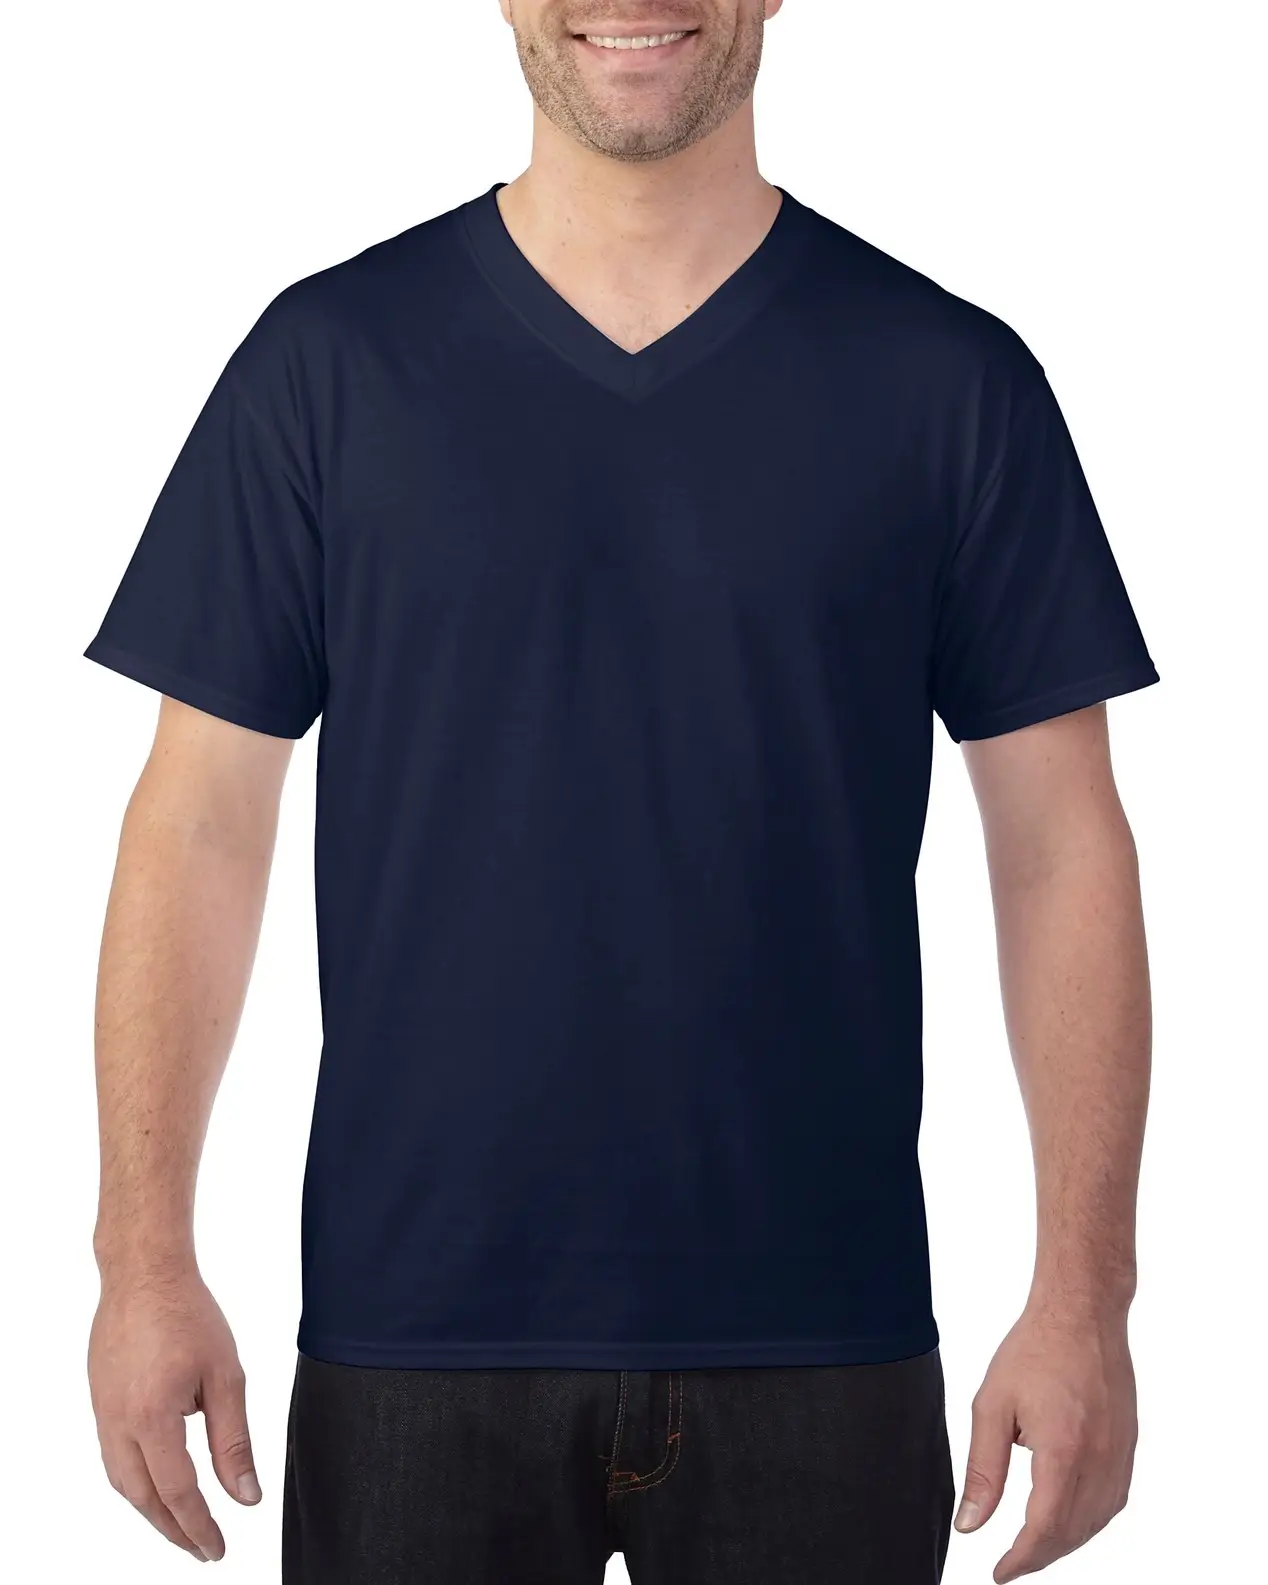 Camiseta lisa azul marino para hombre, ropa de Fitness con cuello de pico, alta calidad, verano, venta al por mayor